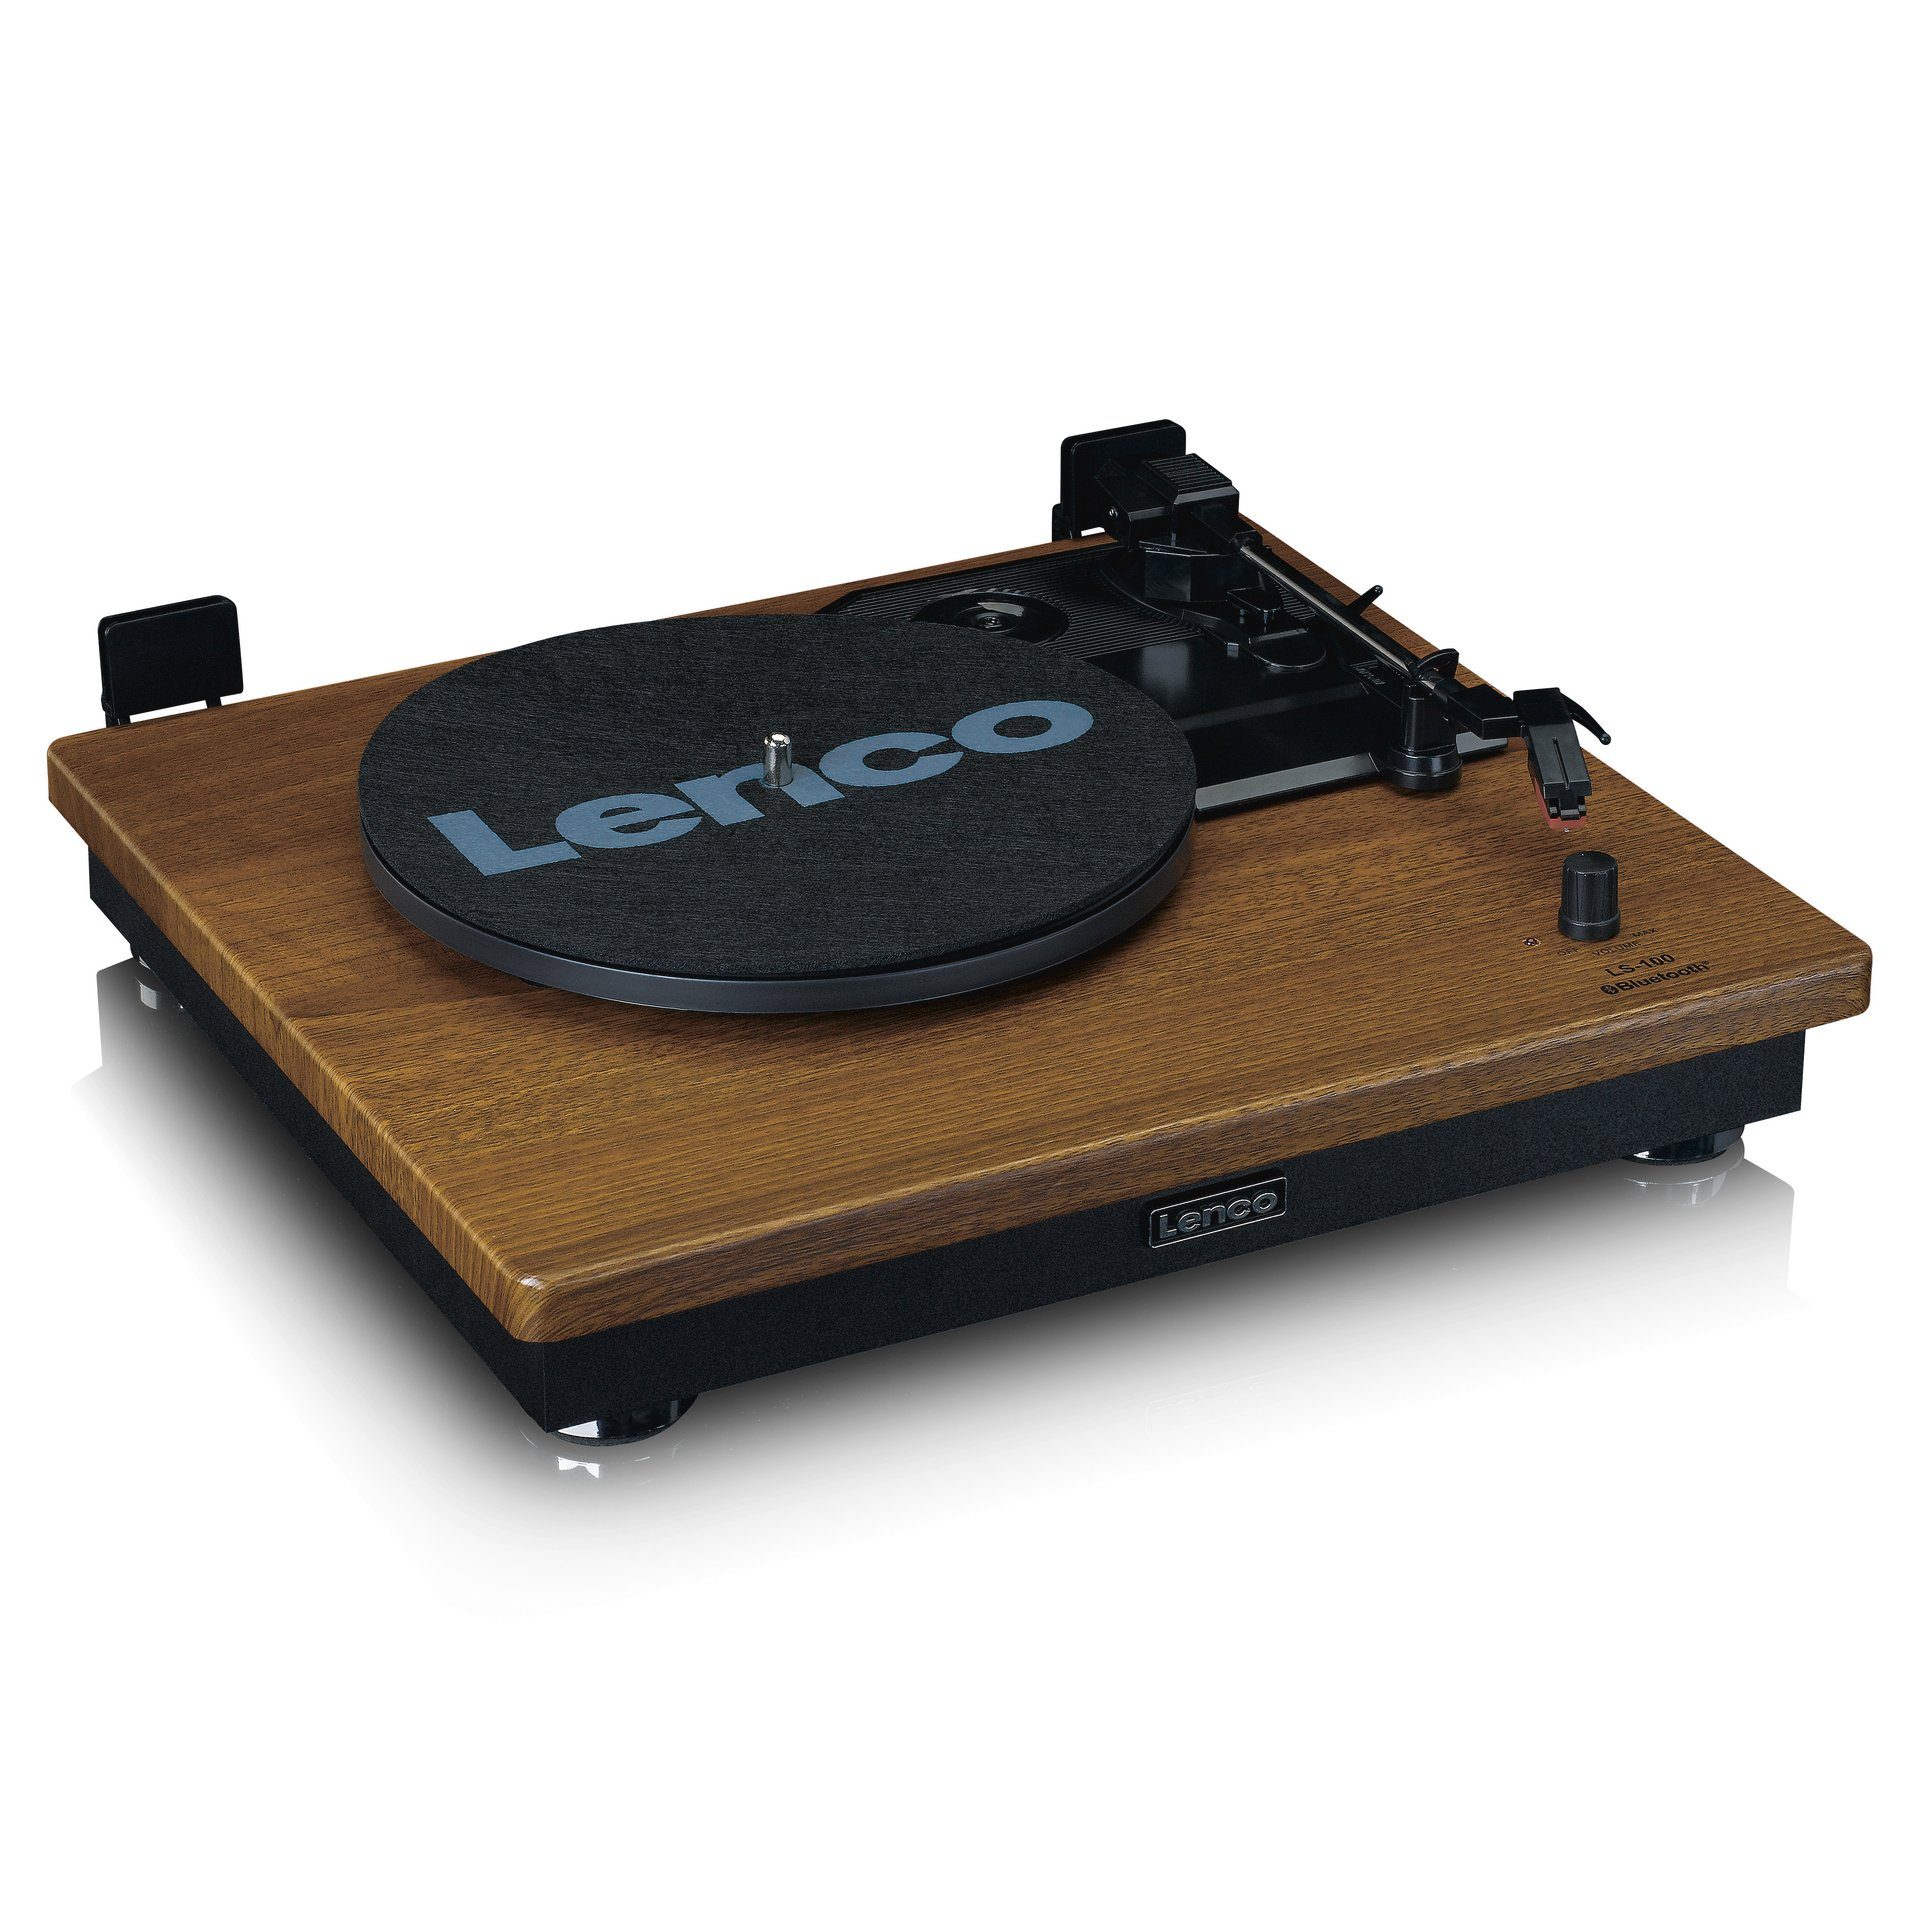 (Riemenantrieb) mit Lenco 2 und externen Bluetooth Plattenspieler Holz Lautsprechern Plattenspieler